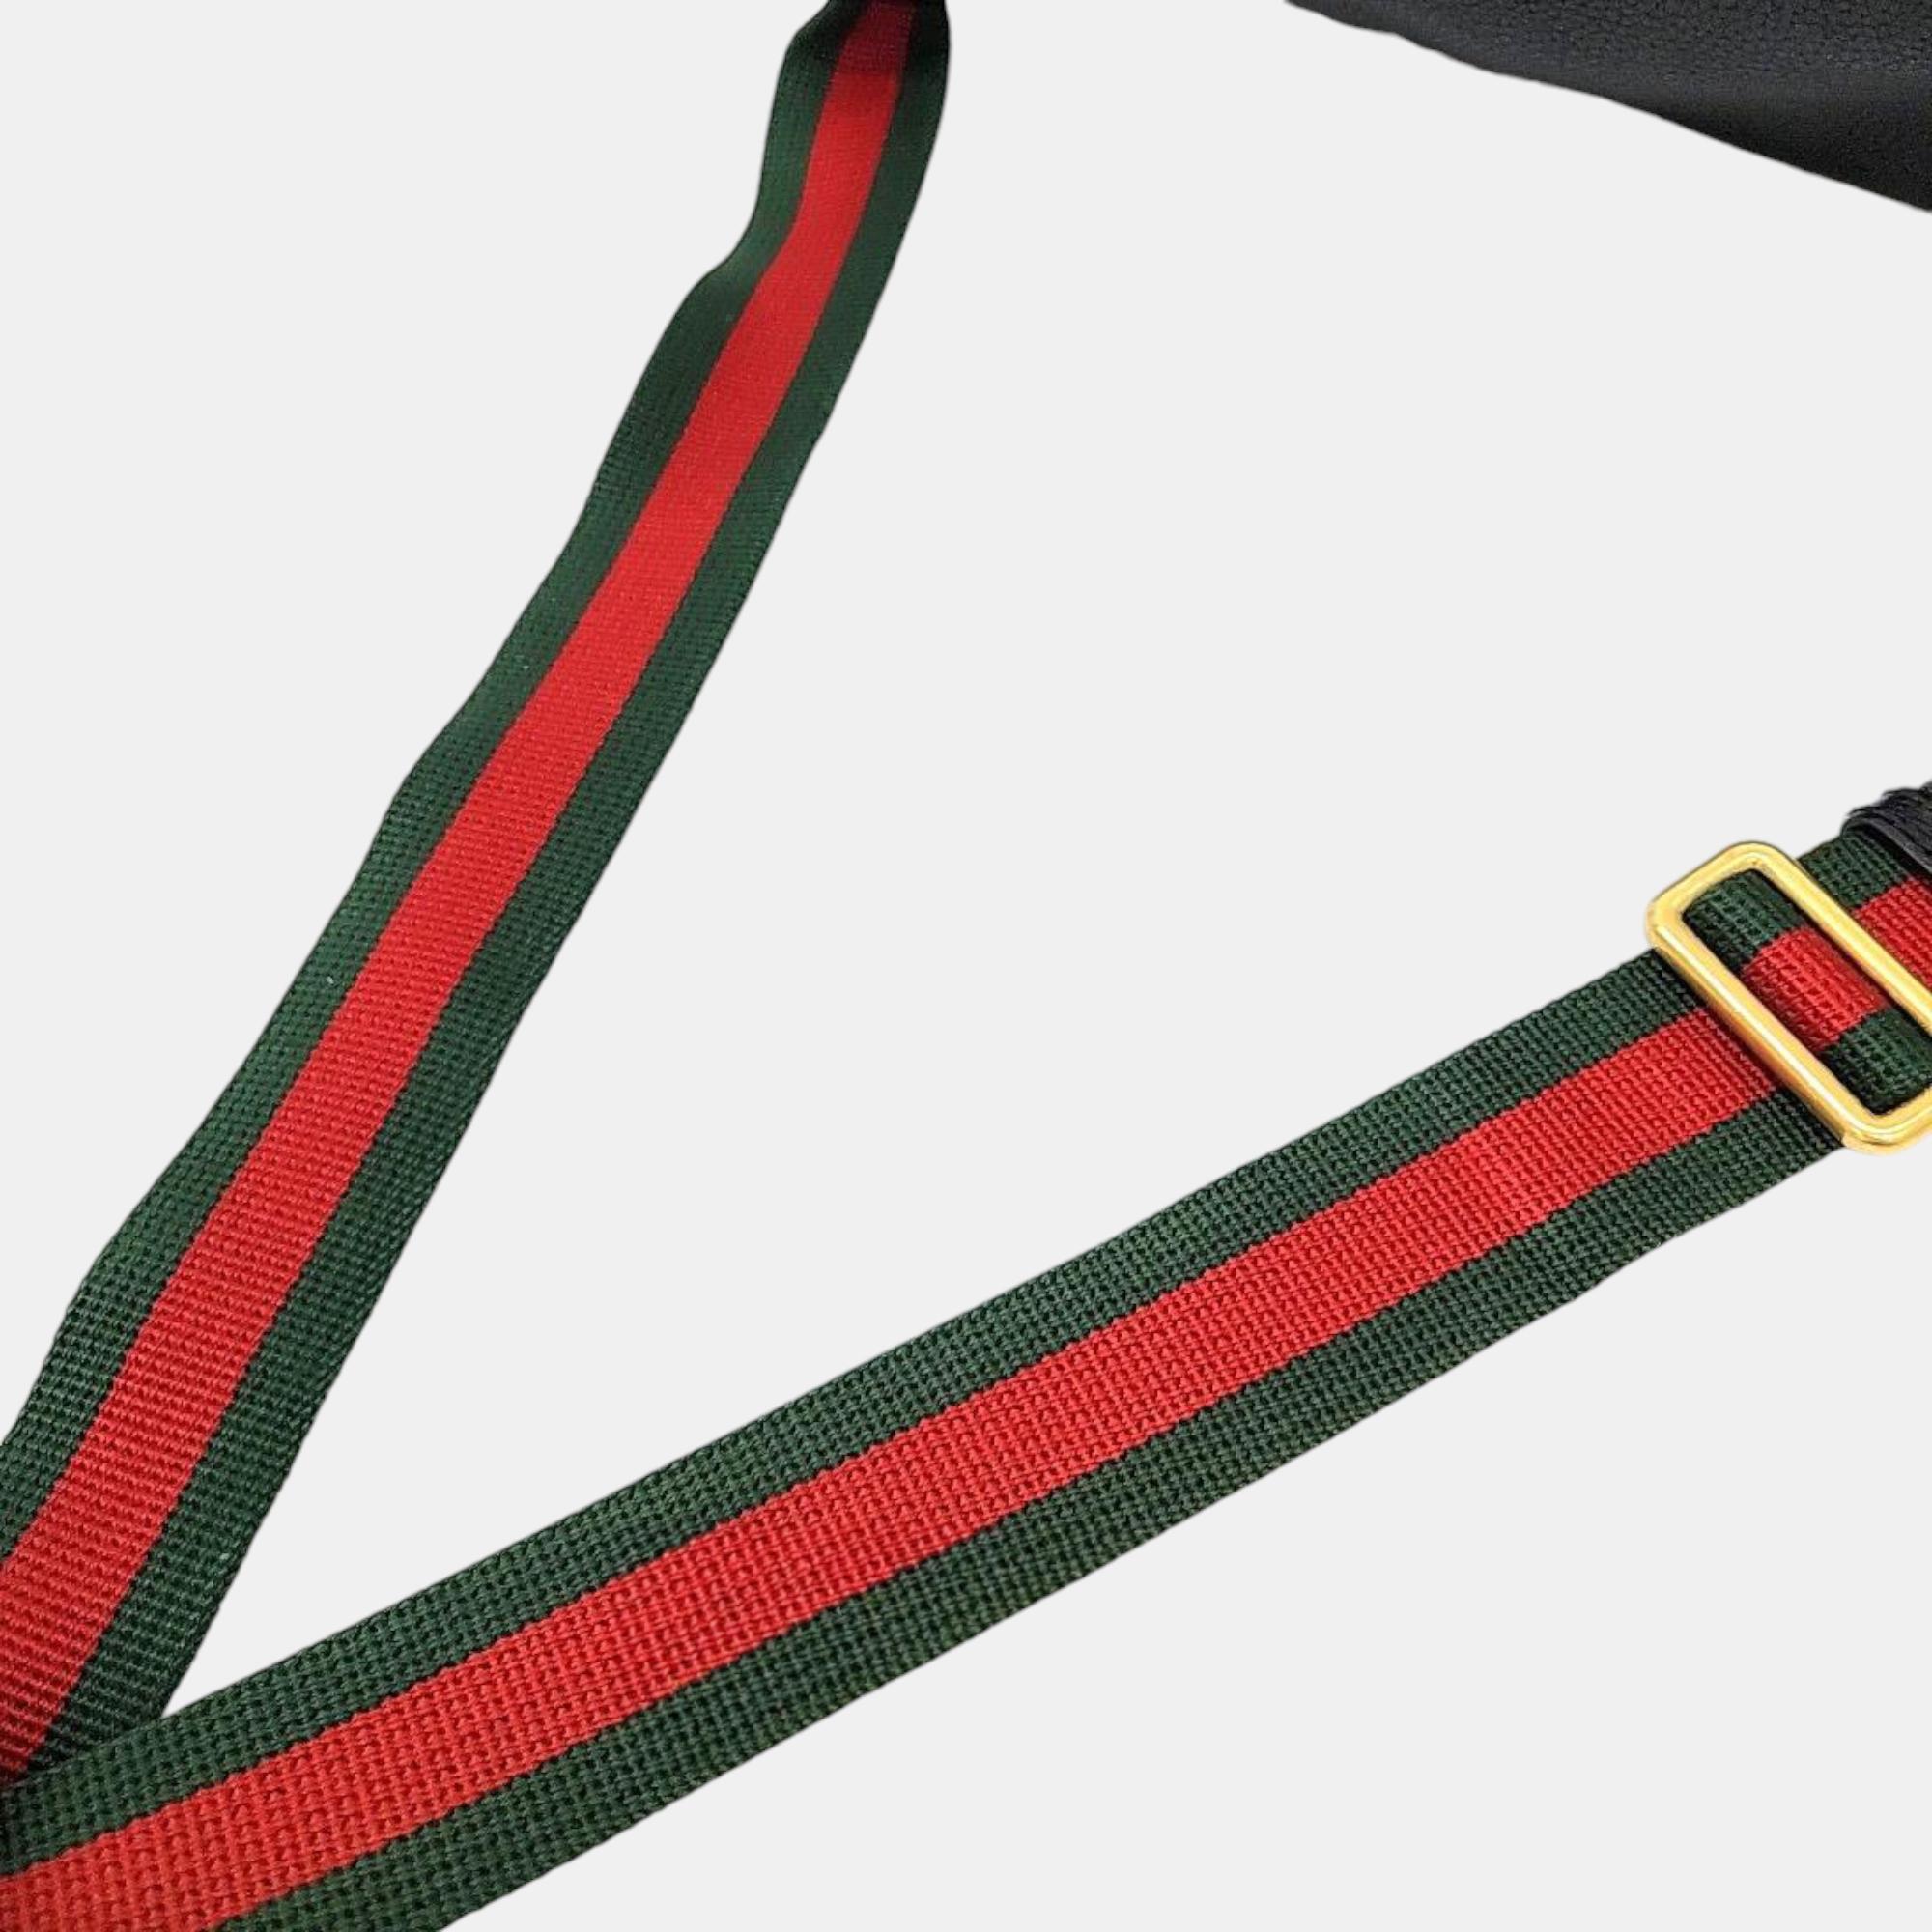 Gucci Black Leather Web Logo Belt Bag (530412)